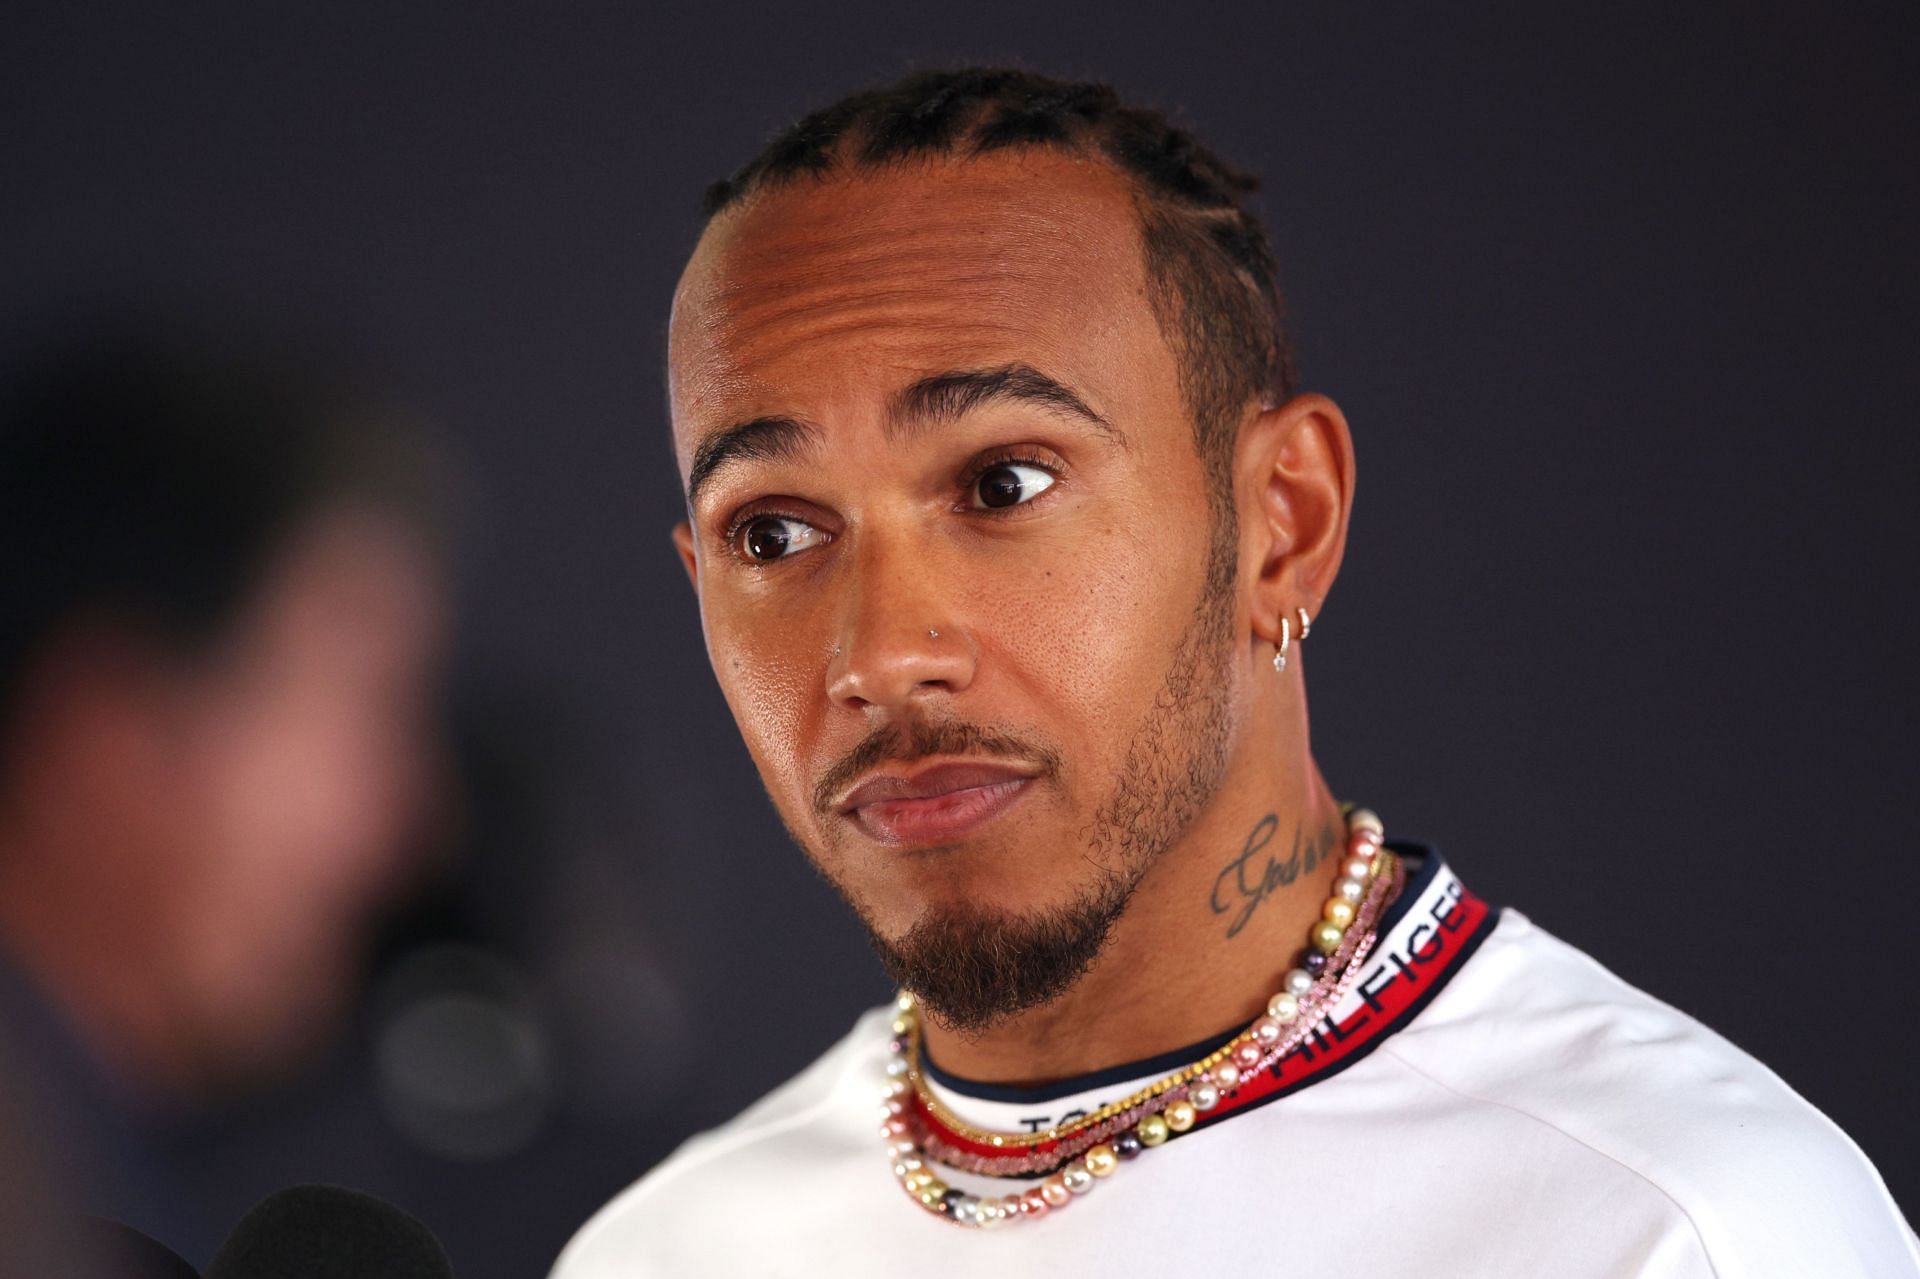 Pin by Zorrie on Lewis Hamilton ❤️ | Lewis hamilton, Lewis, Hamilton tattoos